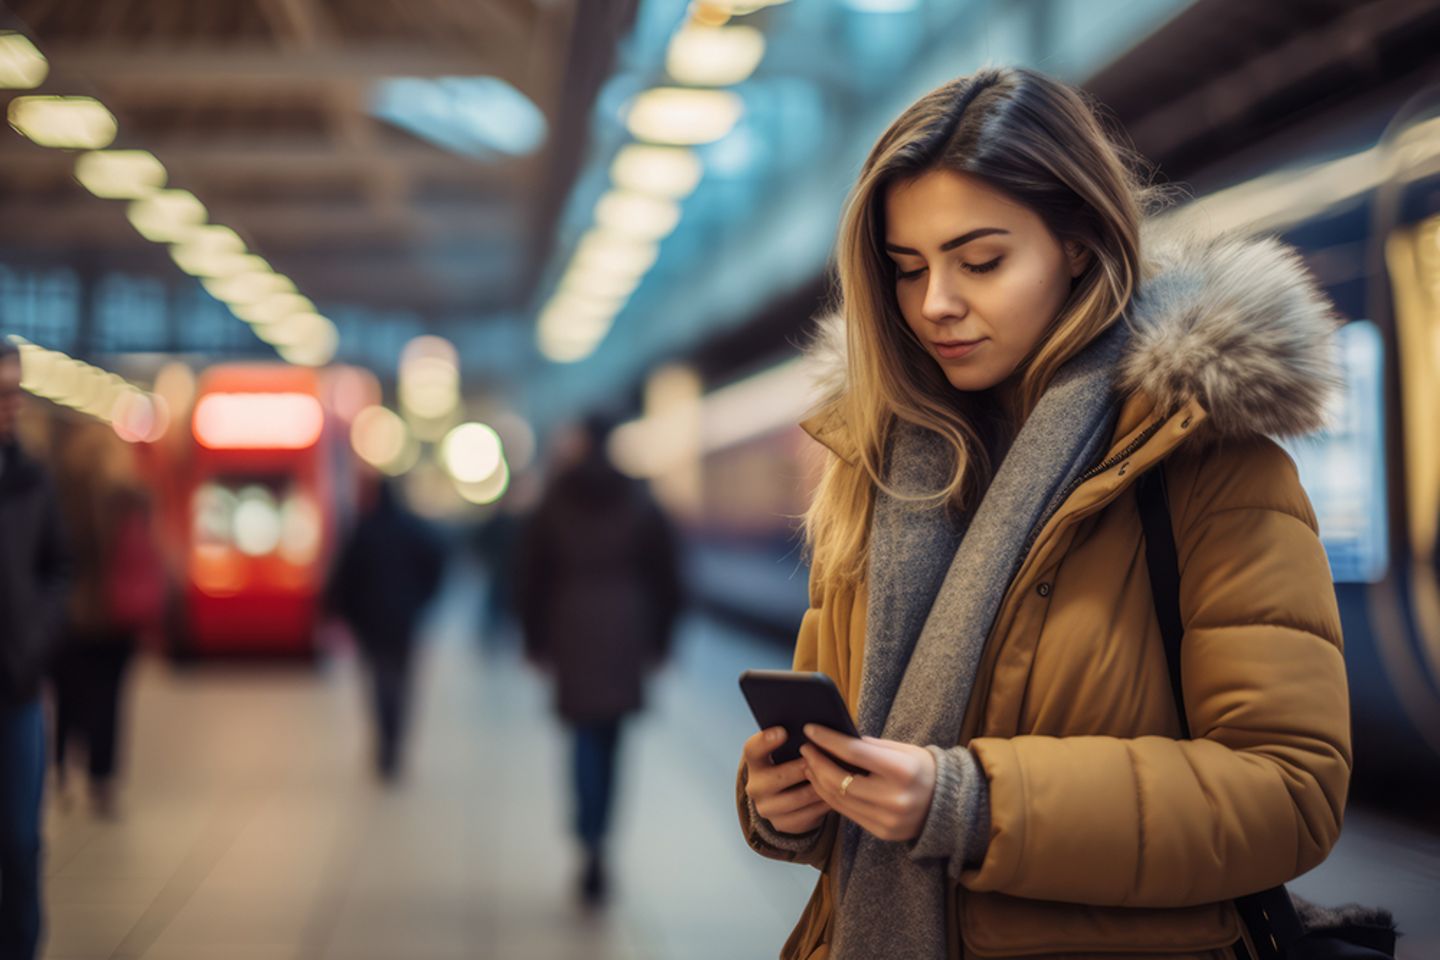  Junge Frau steht auf einem Bahnsteig und schaut auf ihr Mobiltelefon